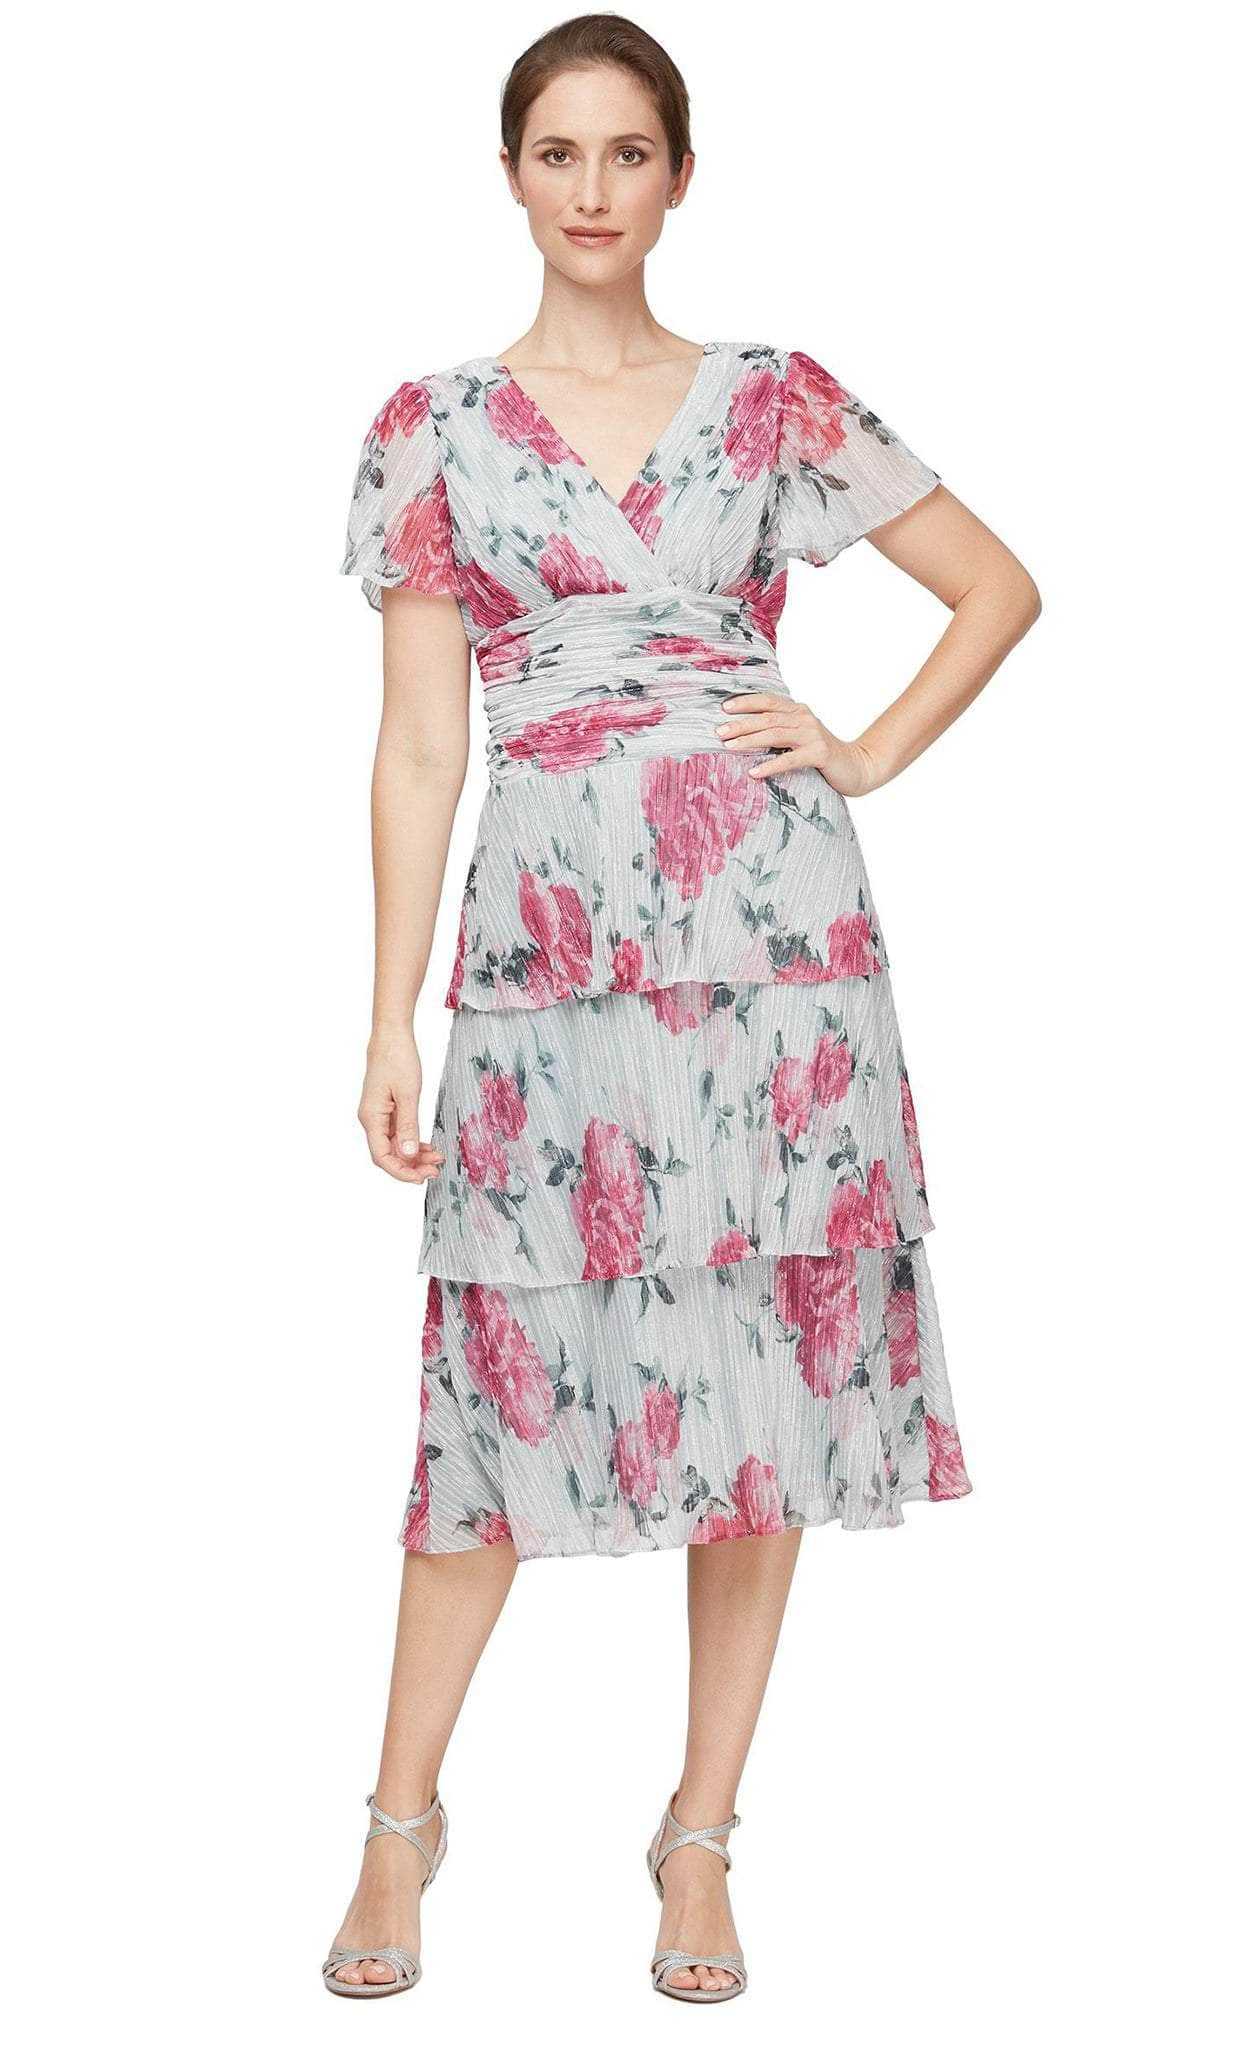 SLNY, SLNY 91551741 - Floral Ruched Sheath Dress